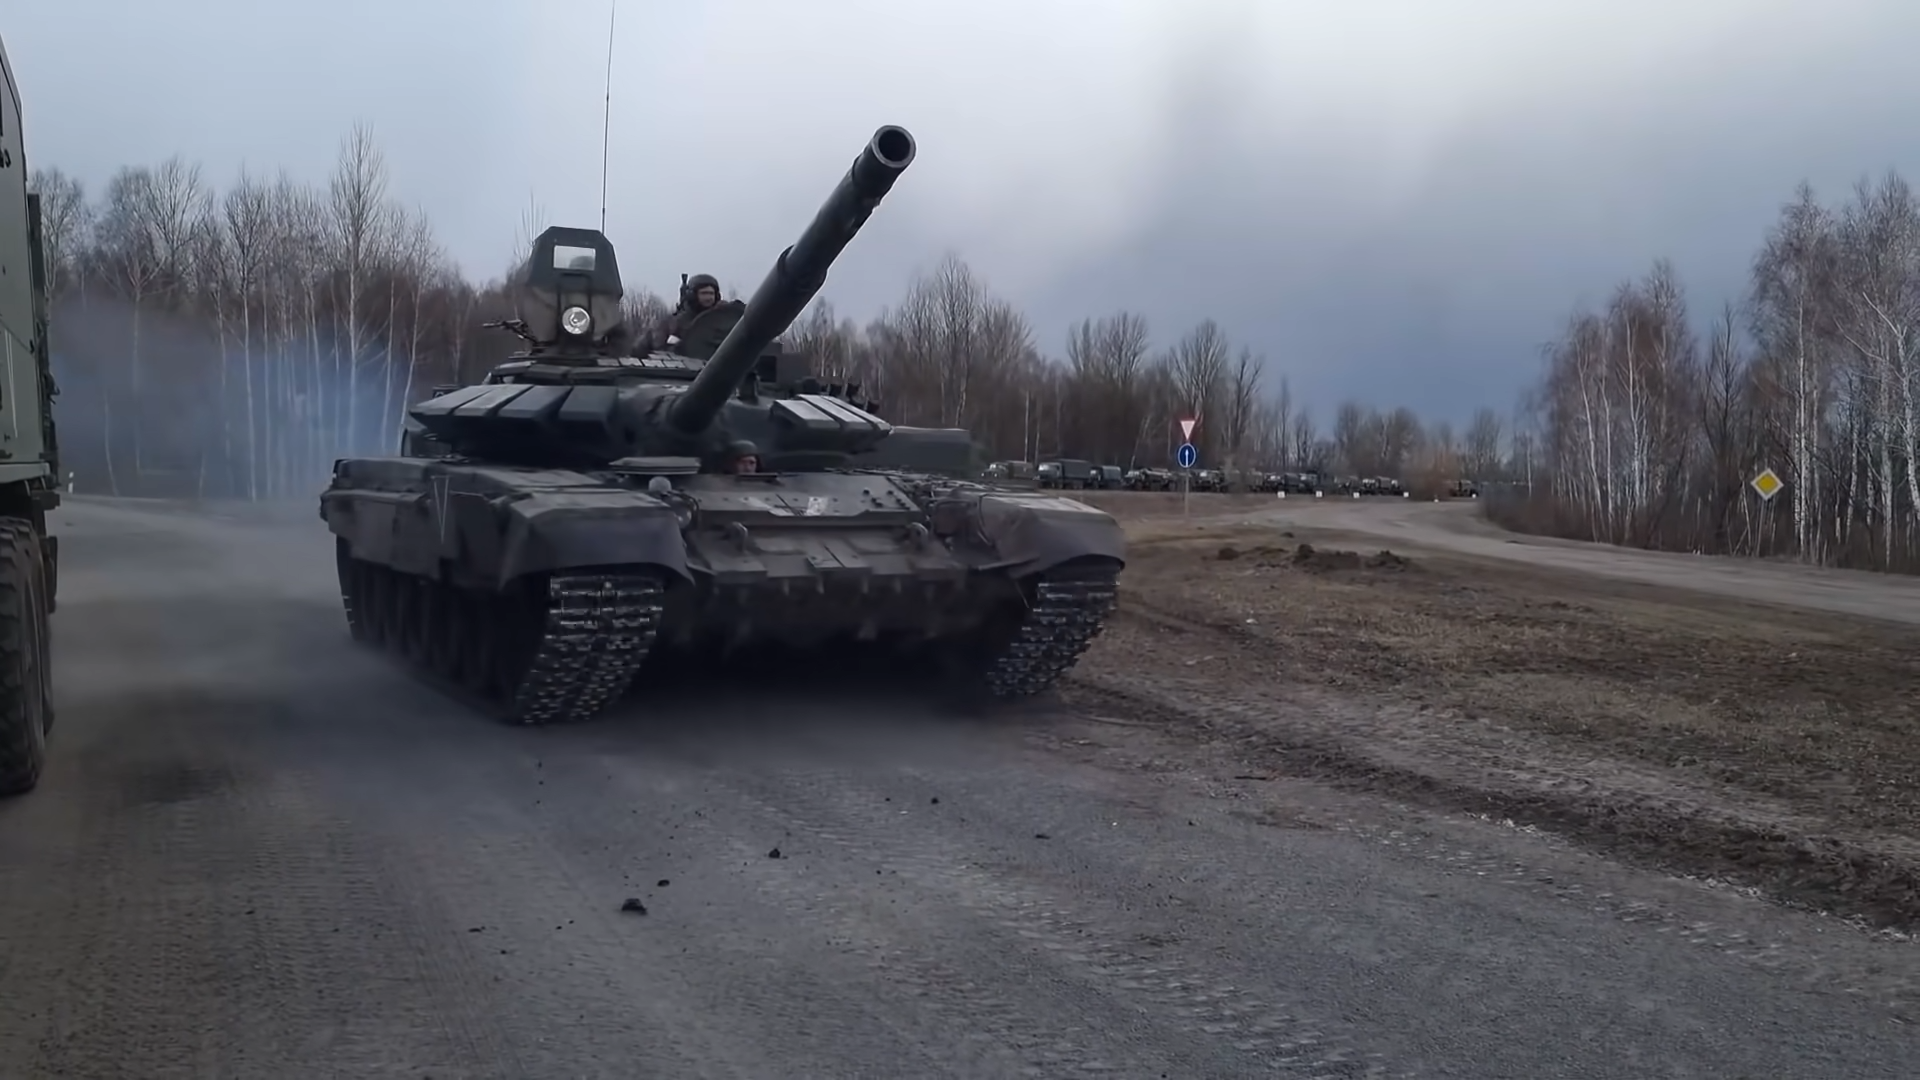 Продвижение российских войск на украину видео